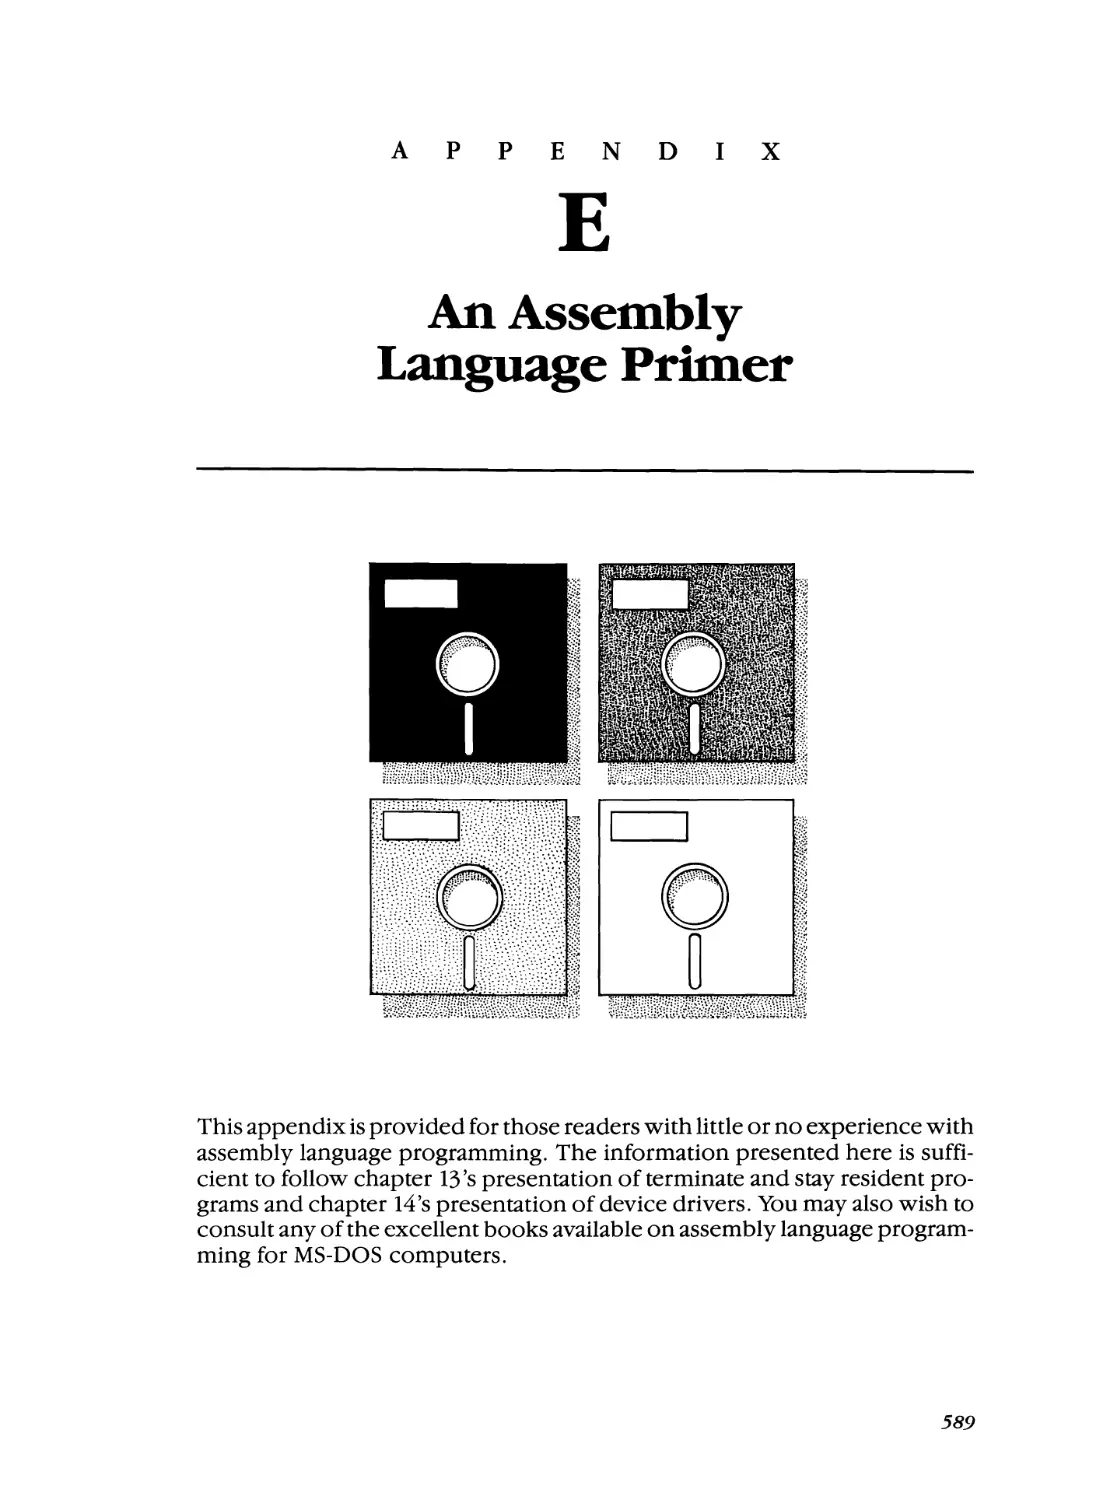 Appendix E - An Assembly Language Primer